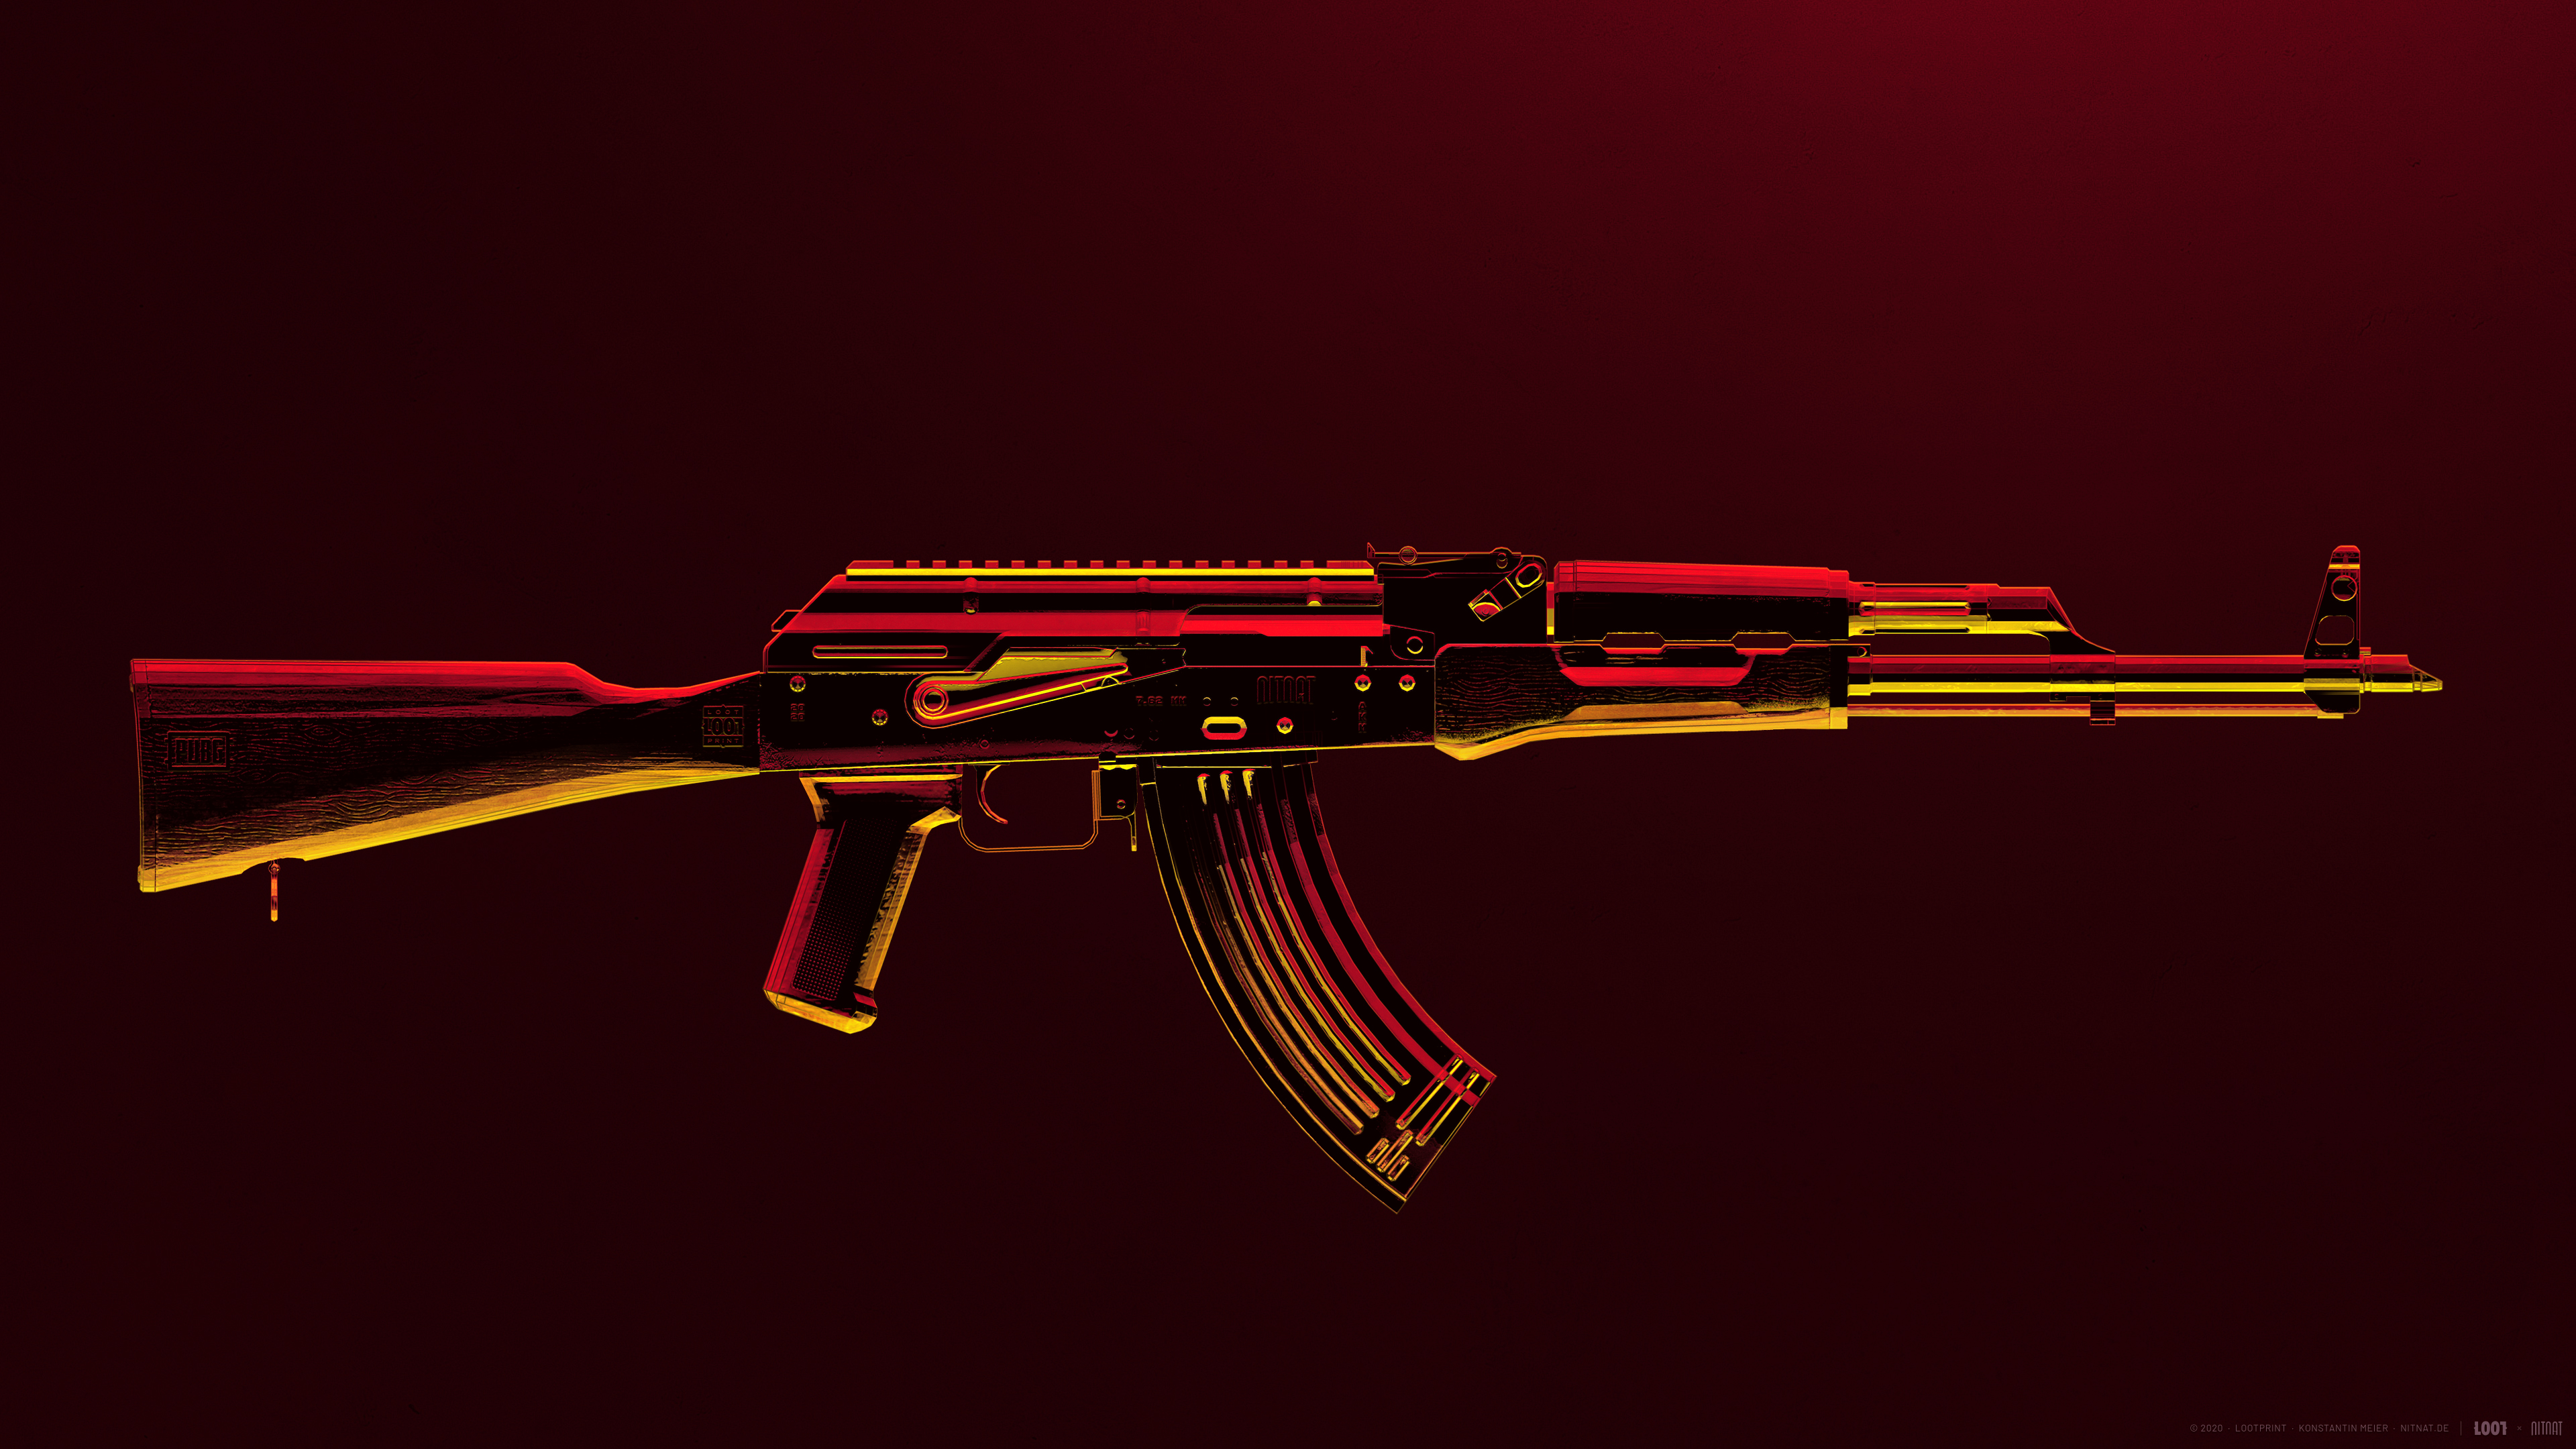 PUBG AK47 weapon Wallpaper 4k Ultra HD ID:7732